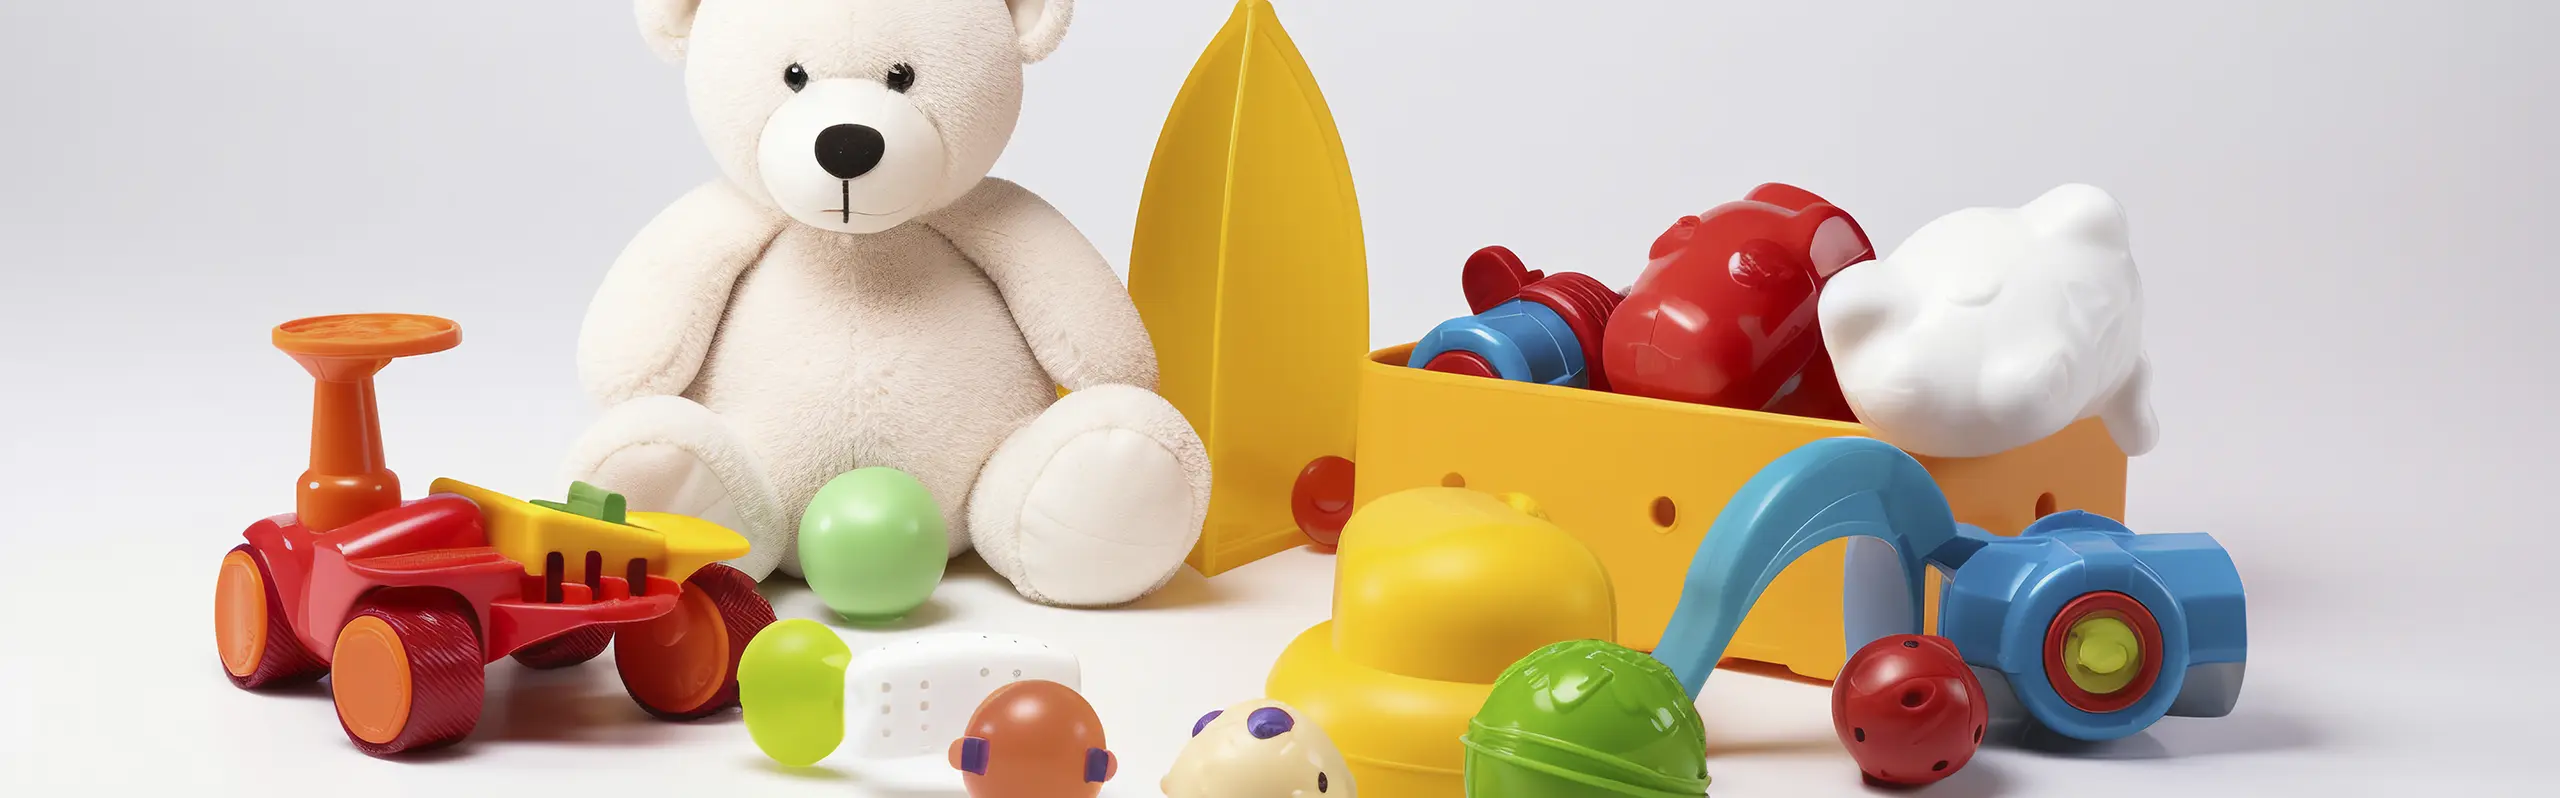 Nova alíquota de importação deve impulsionar mercado de brinquedos com redução dos preços.